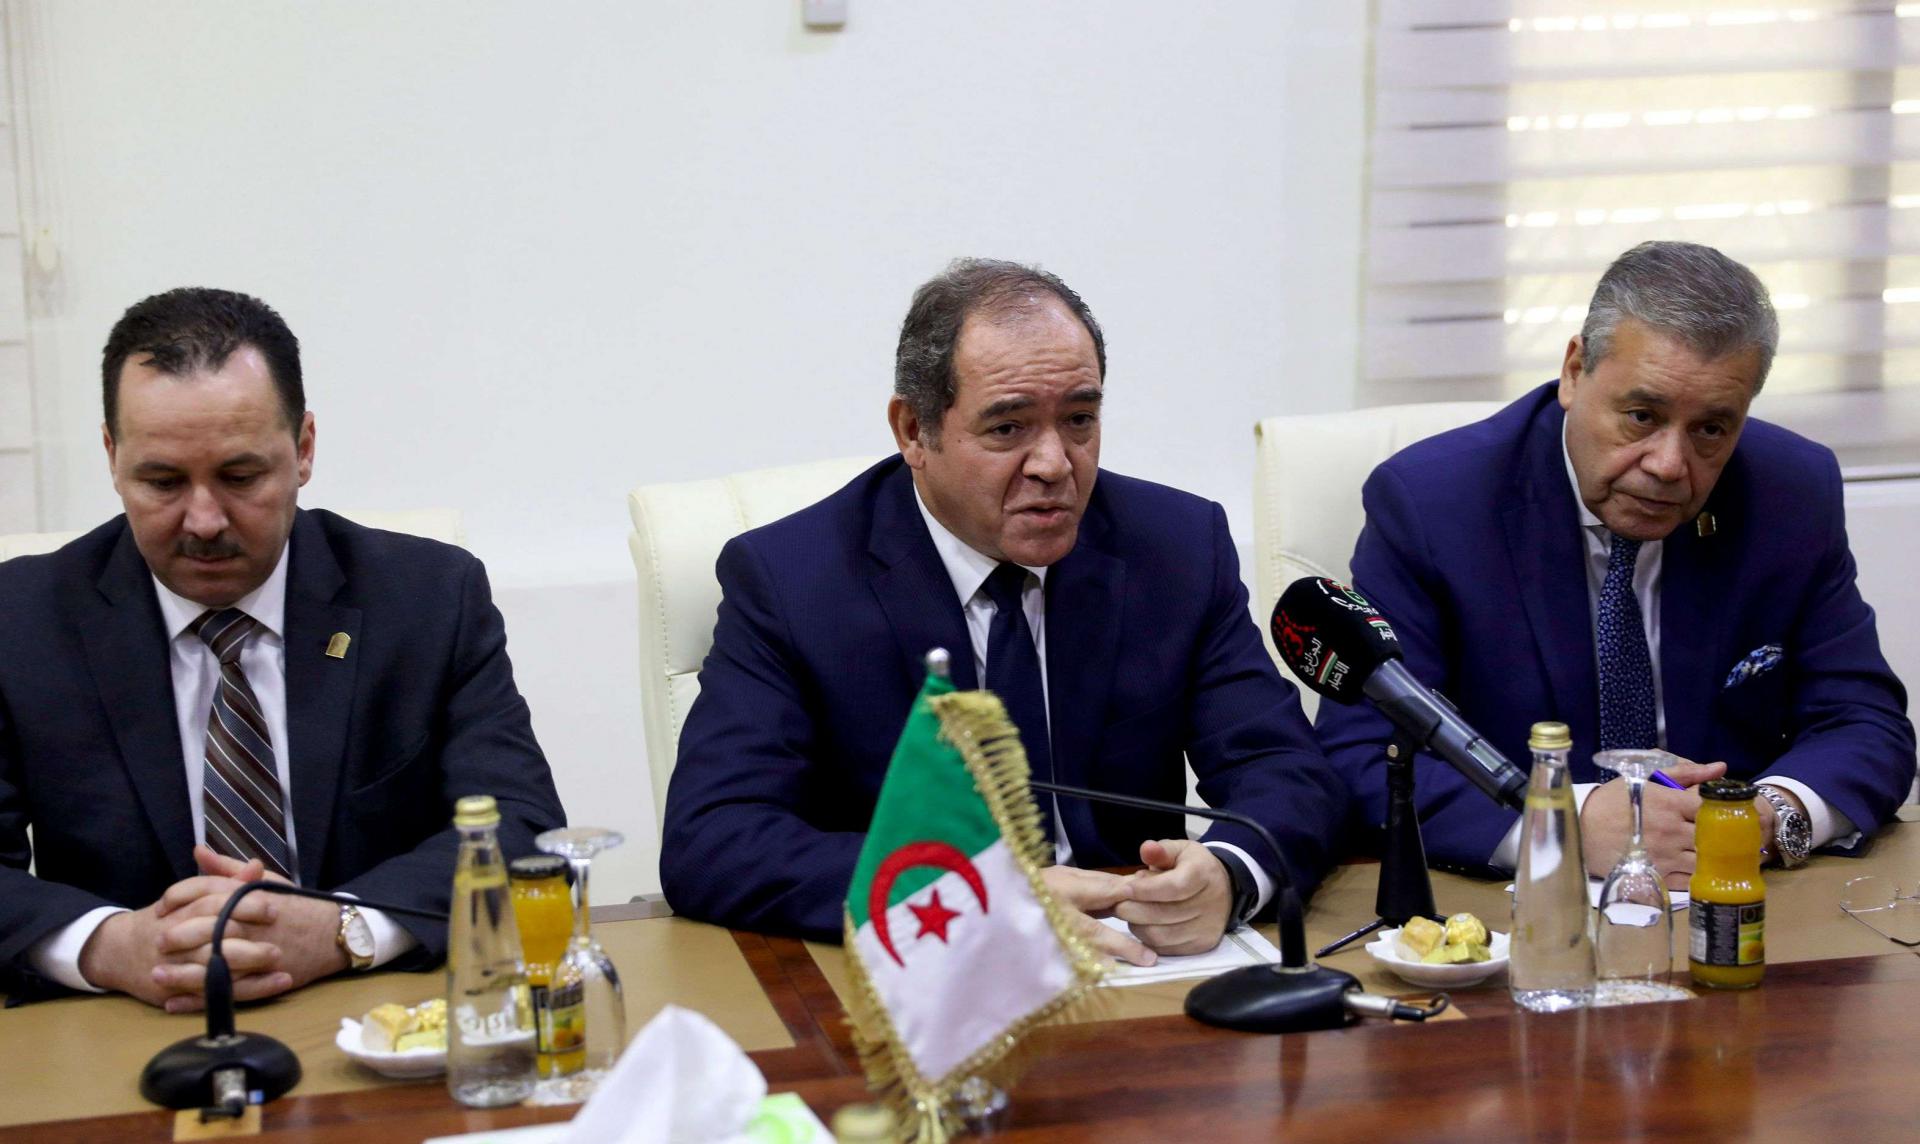 الجزائر دفعت في السابق بتعزيزات عسكرية ضخمة للحدود مع ليبيا خوفا من تسلل ارهابيين إلى أراضيها